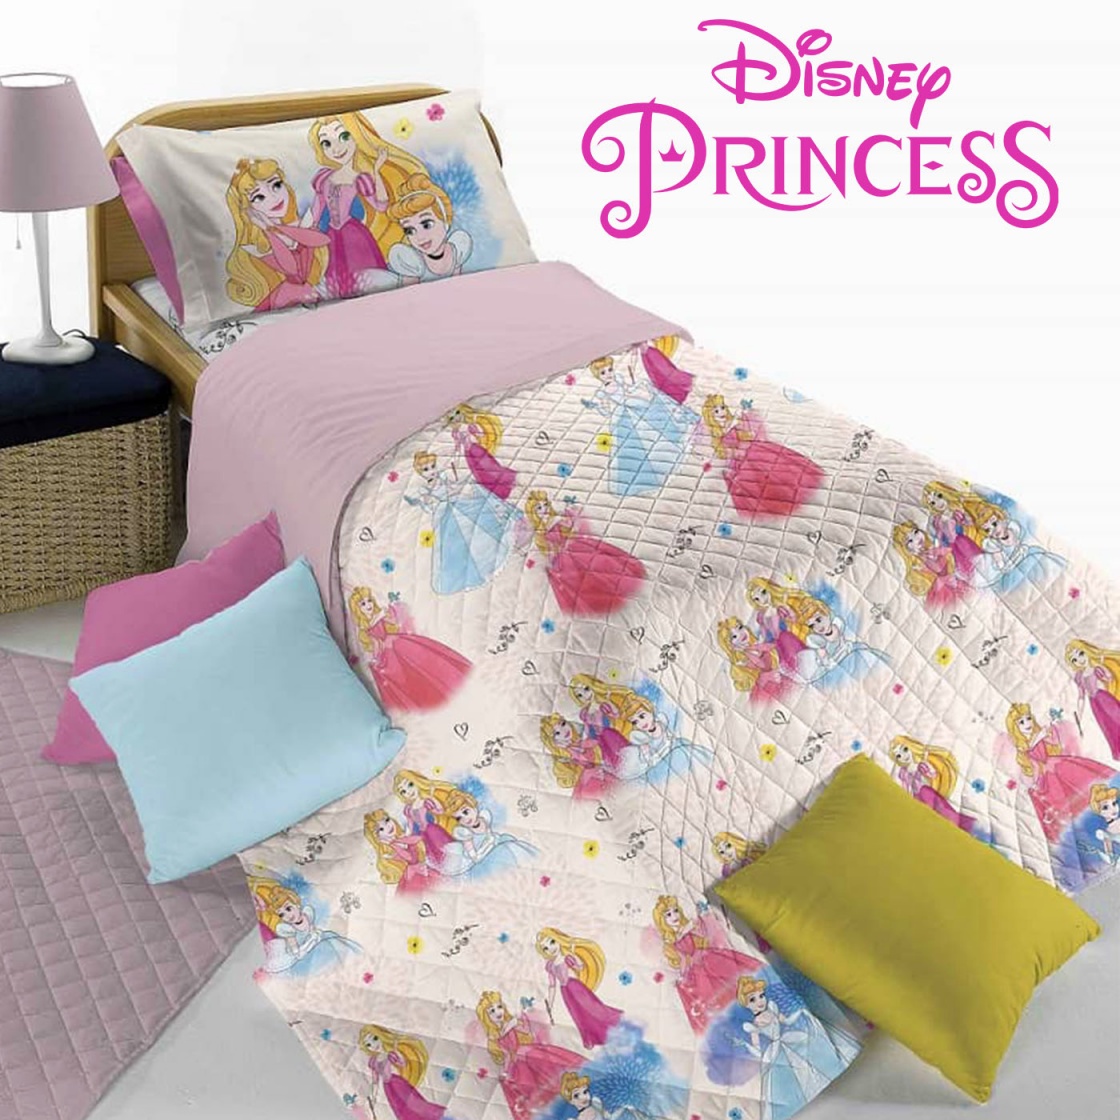 Trapuntino Princess Disney per letto Singolo